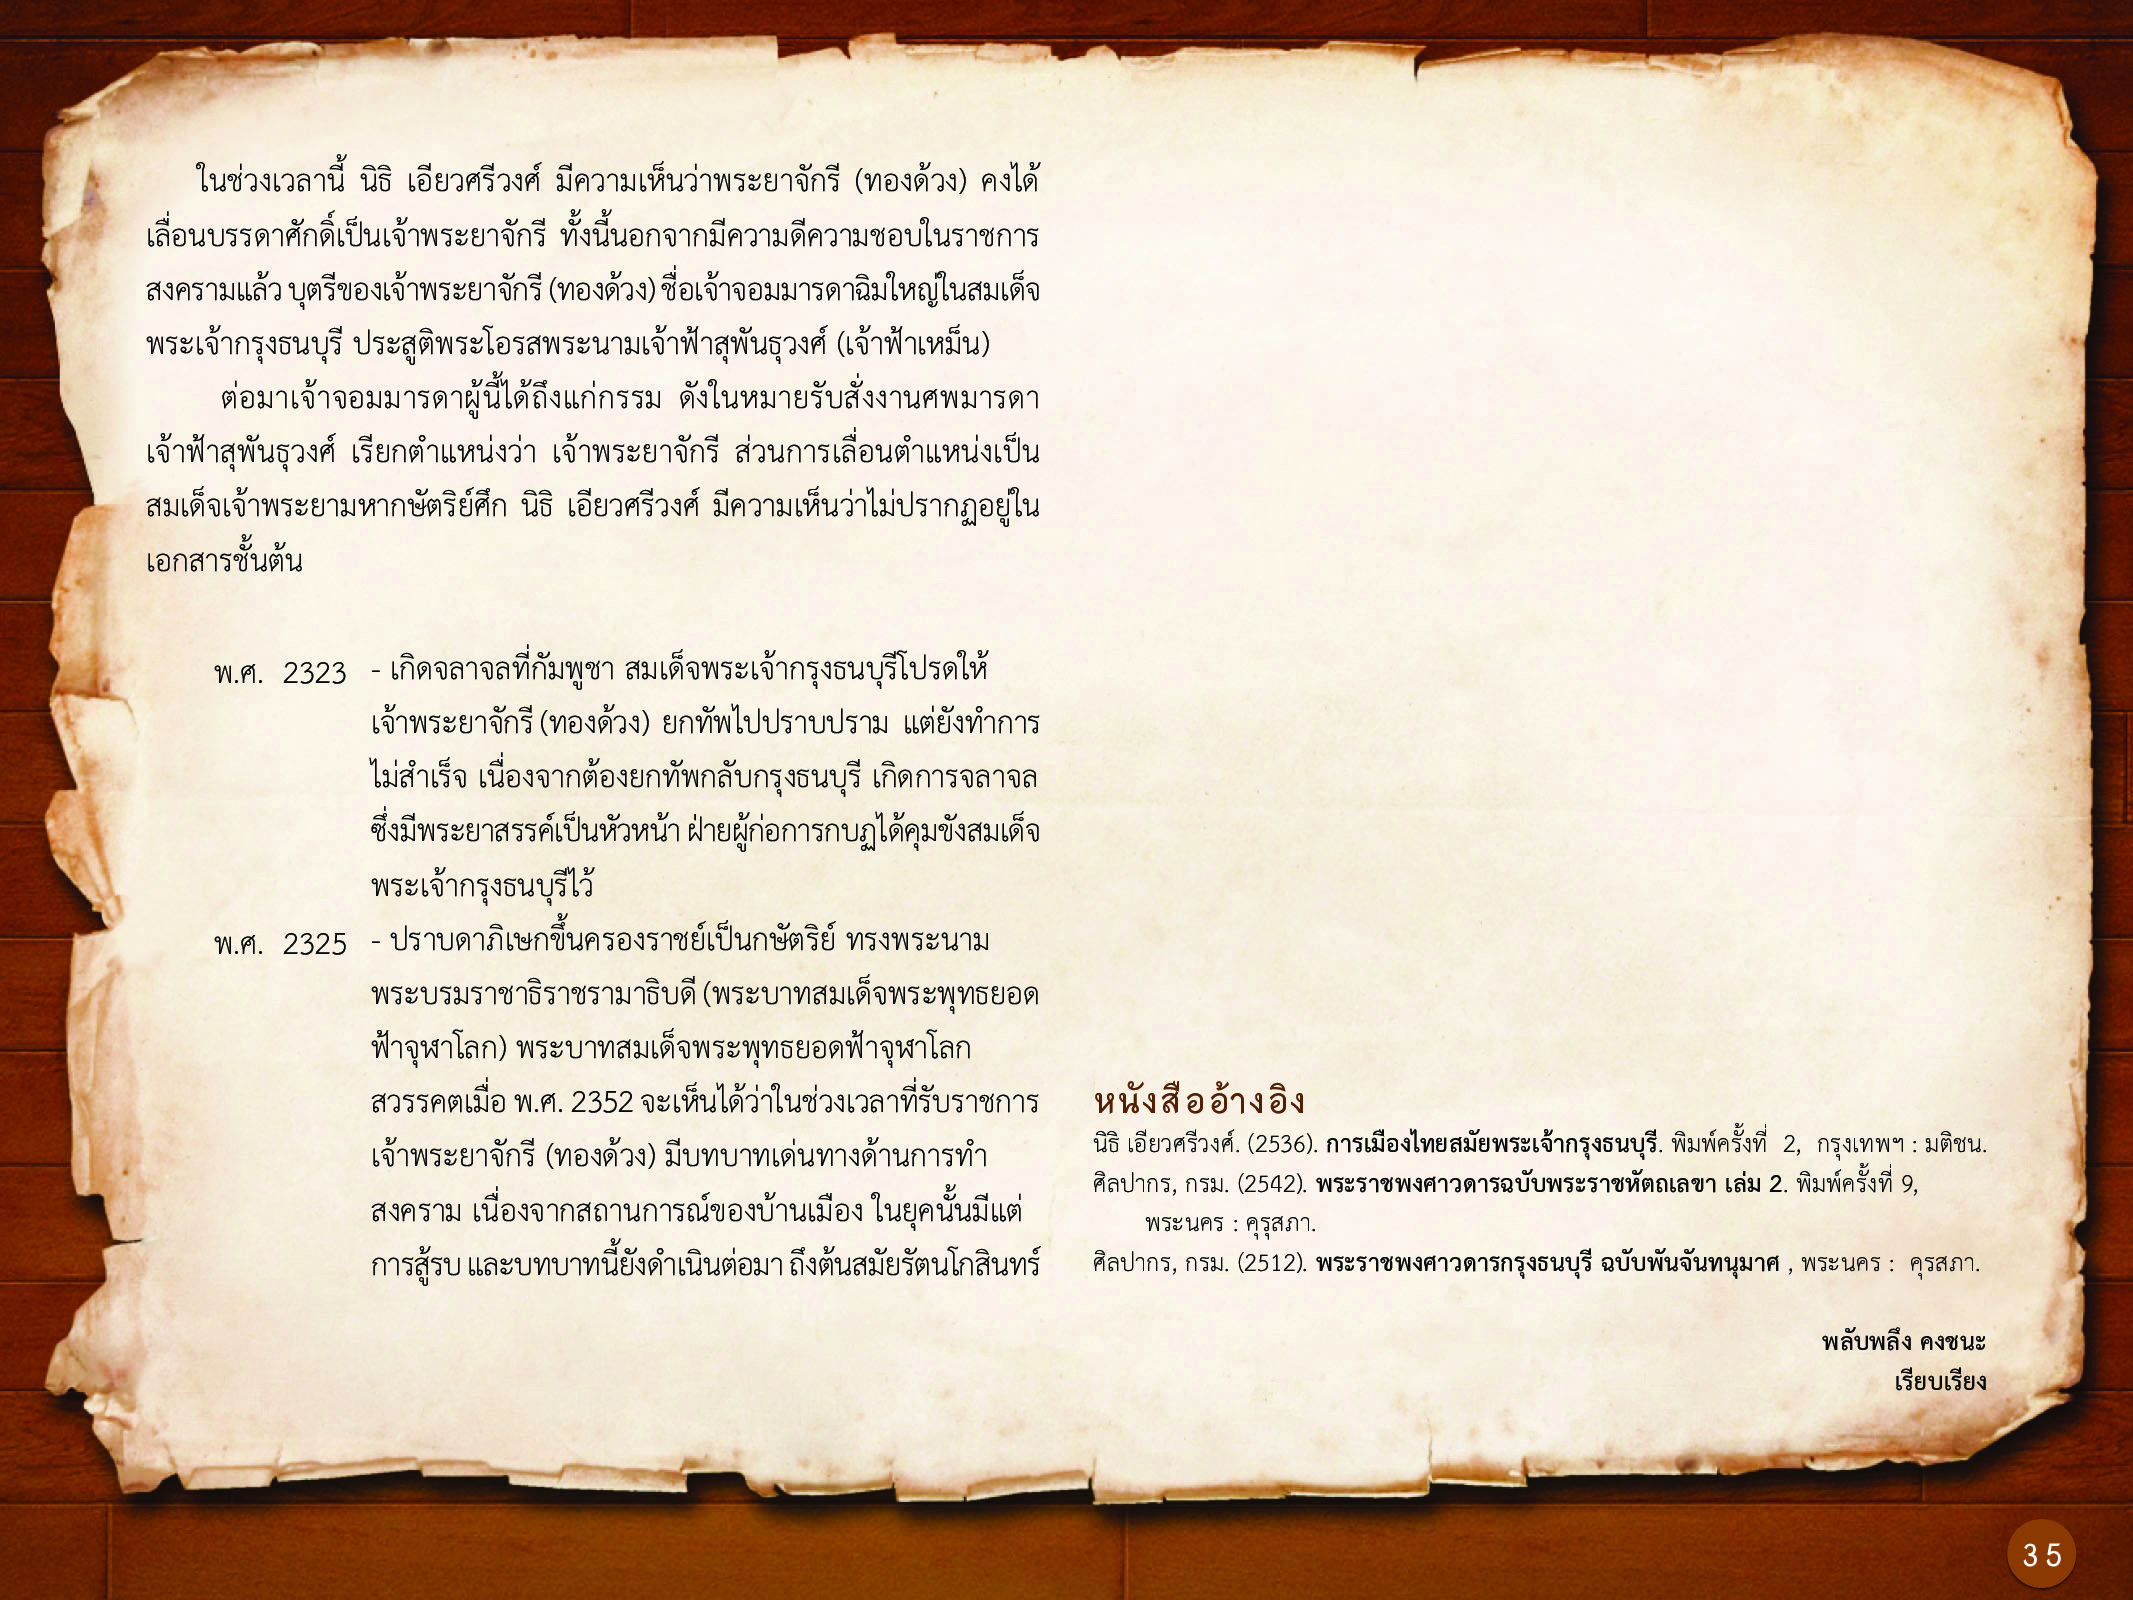 ประวัติศาสตร์กรุงธนบุรี ./images/history_dhonburi/35.jpg